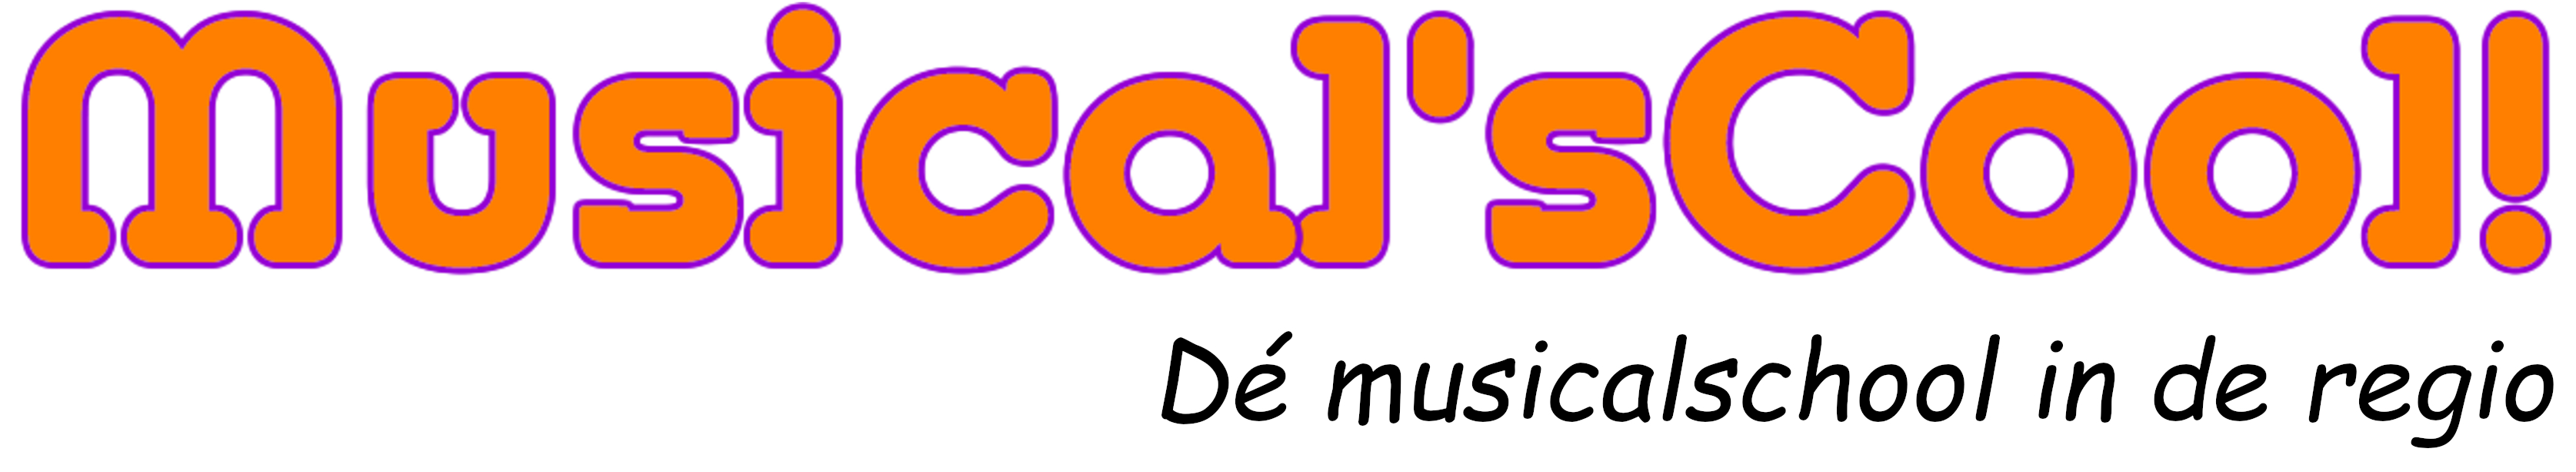 MusicalsCool logo met tekst